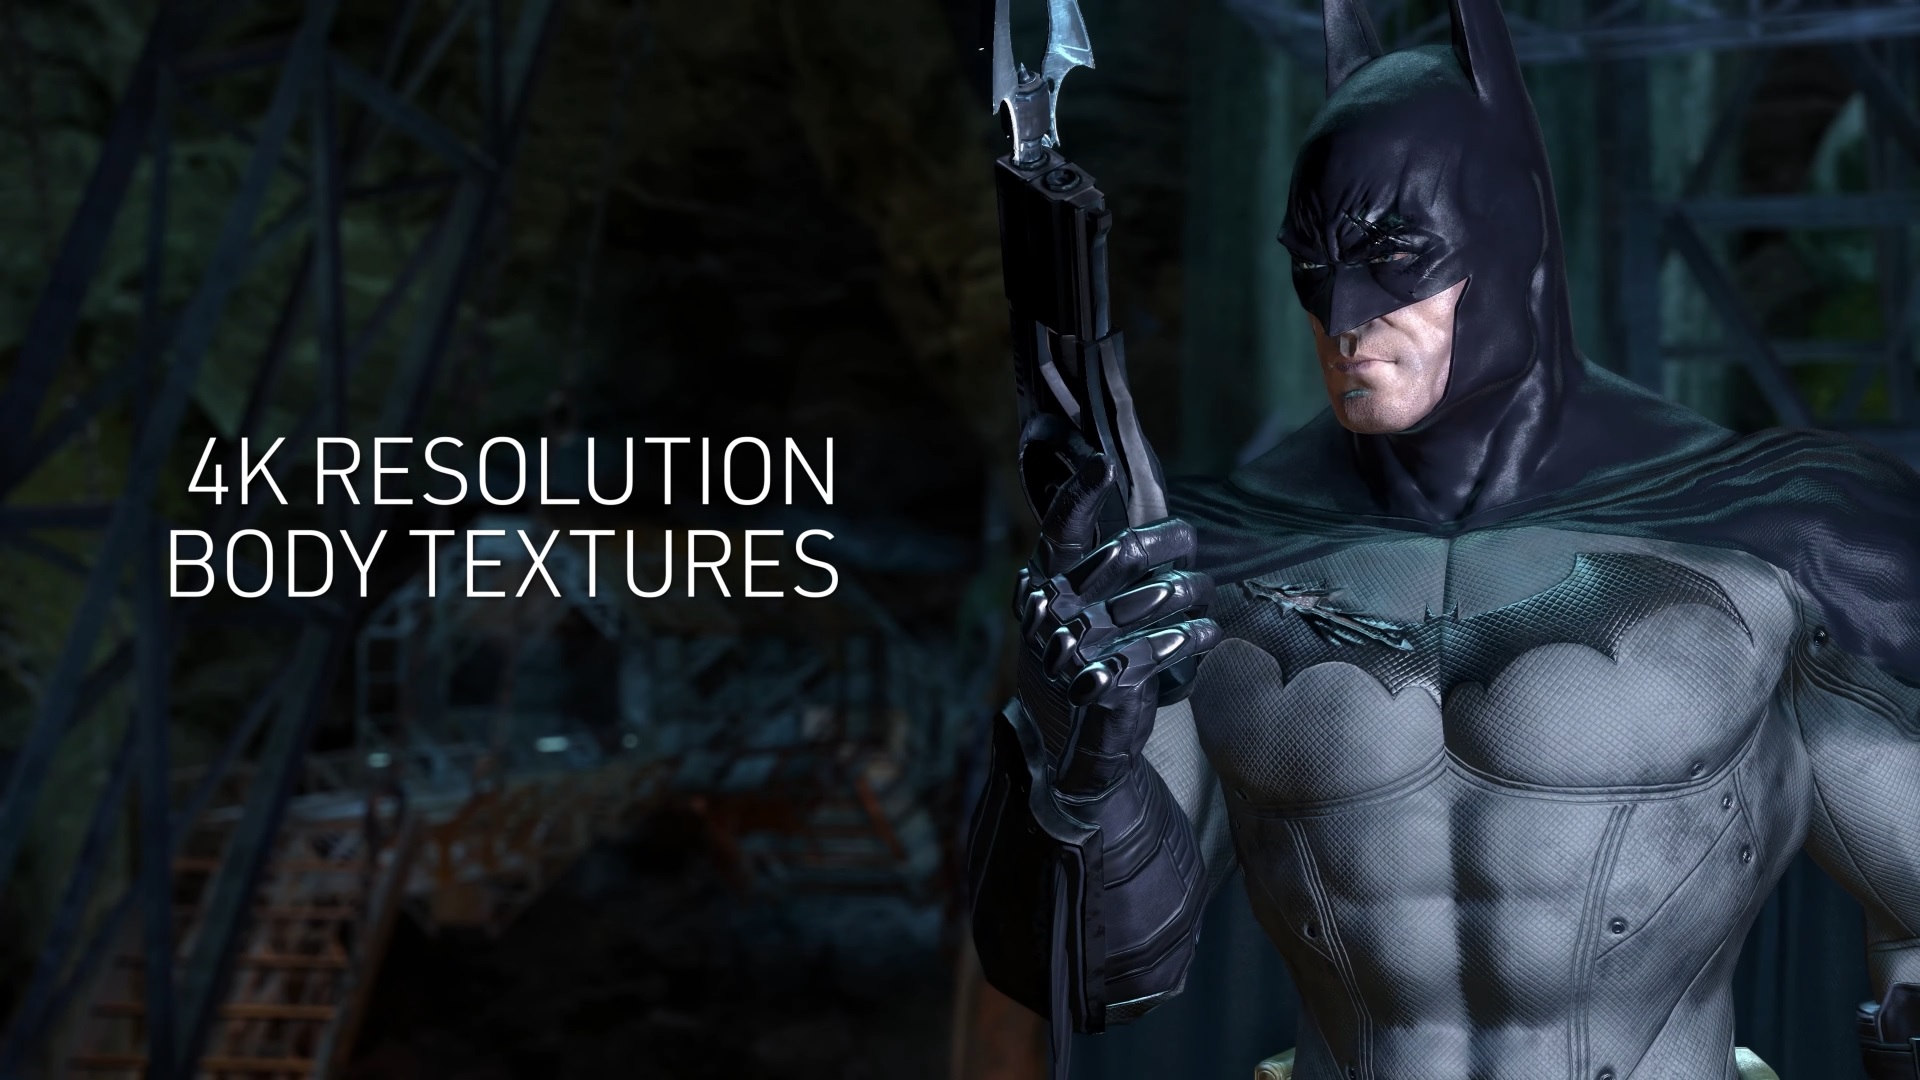 Batman: Arkham Asylum Gets Free Downloadable Content